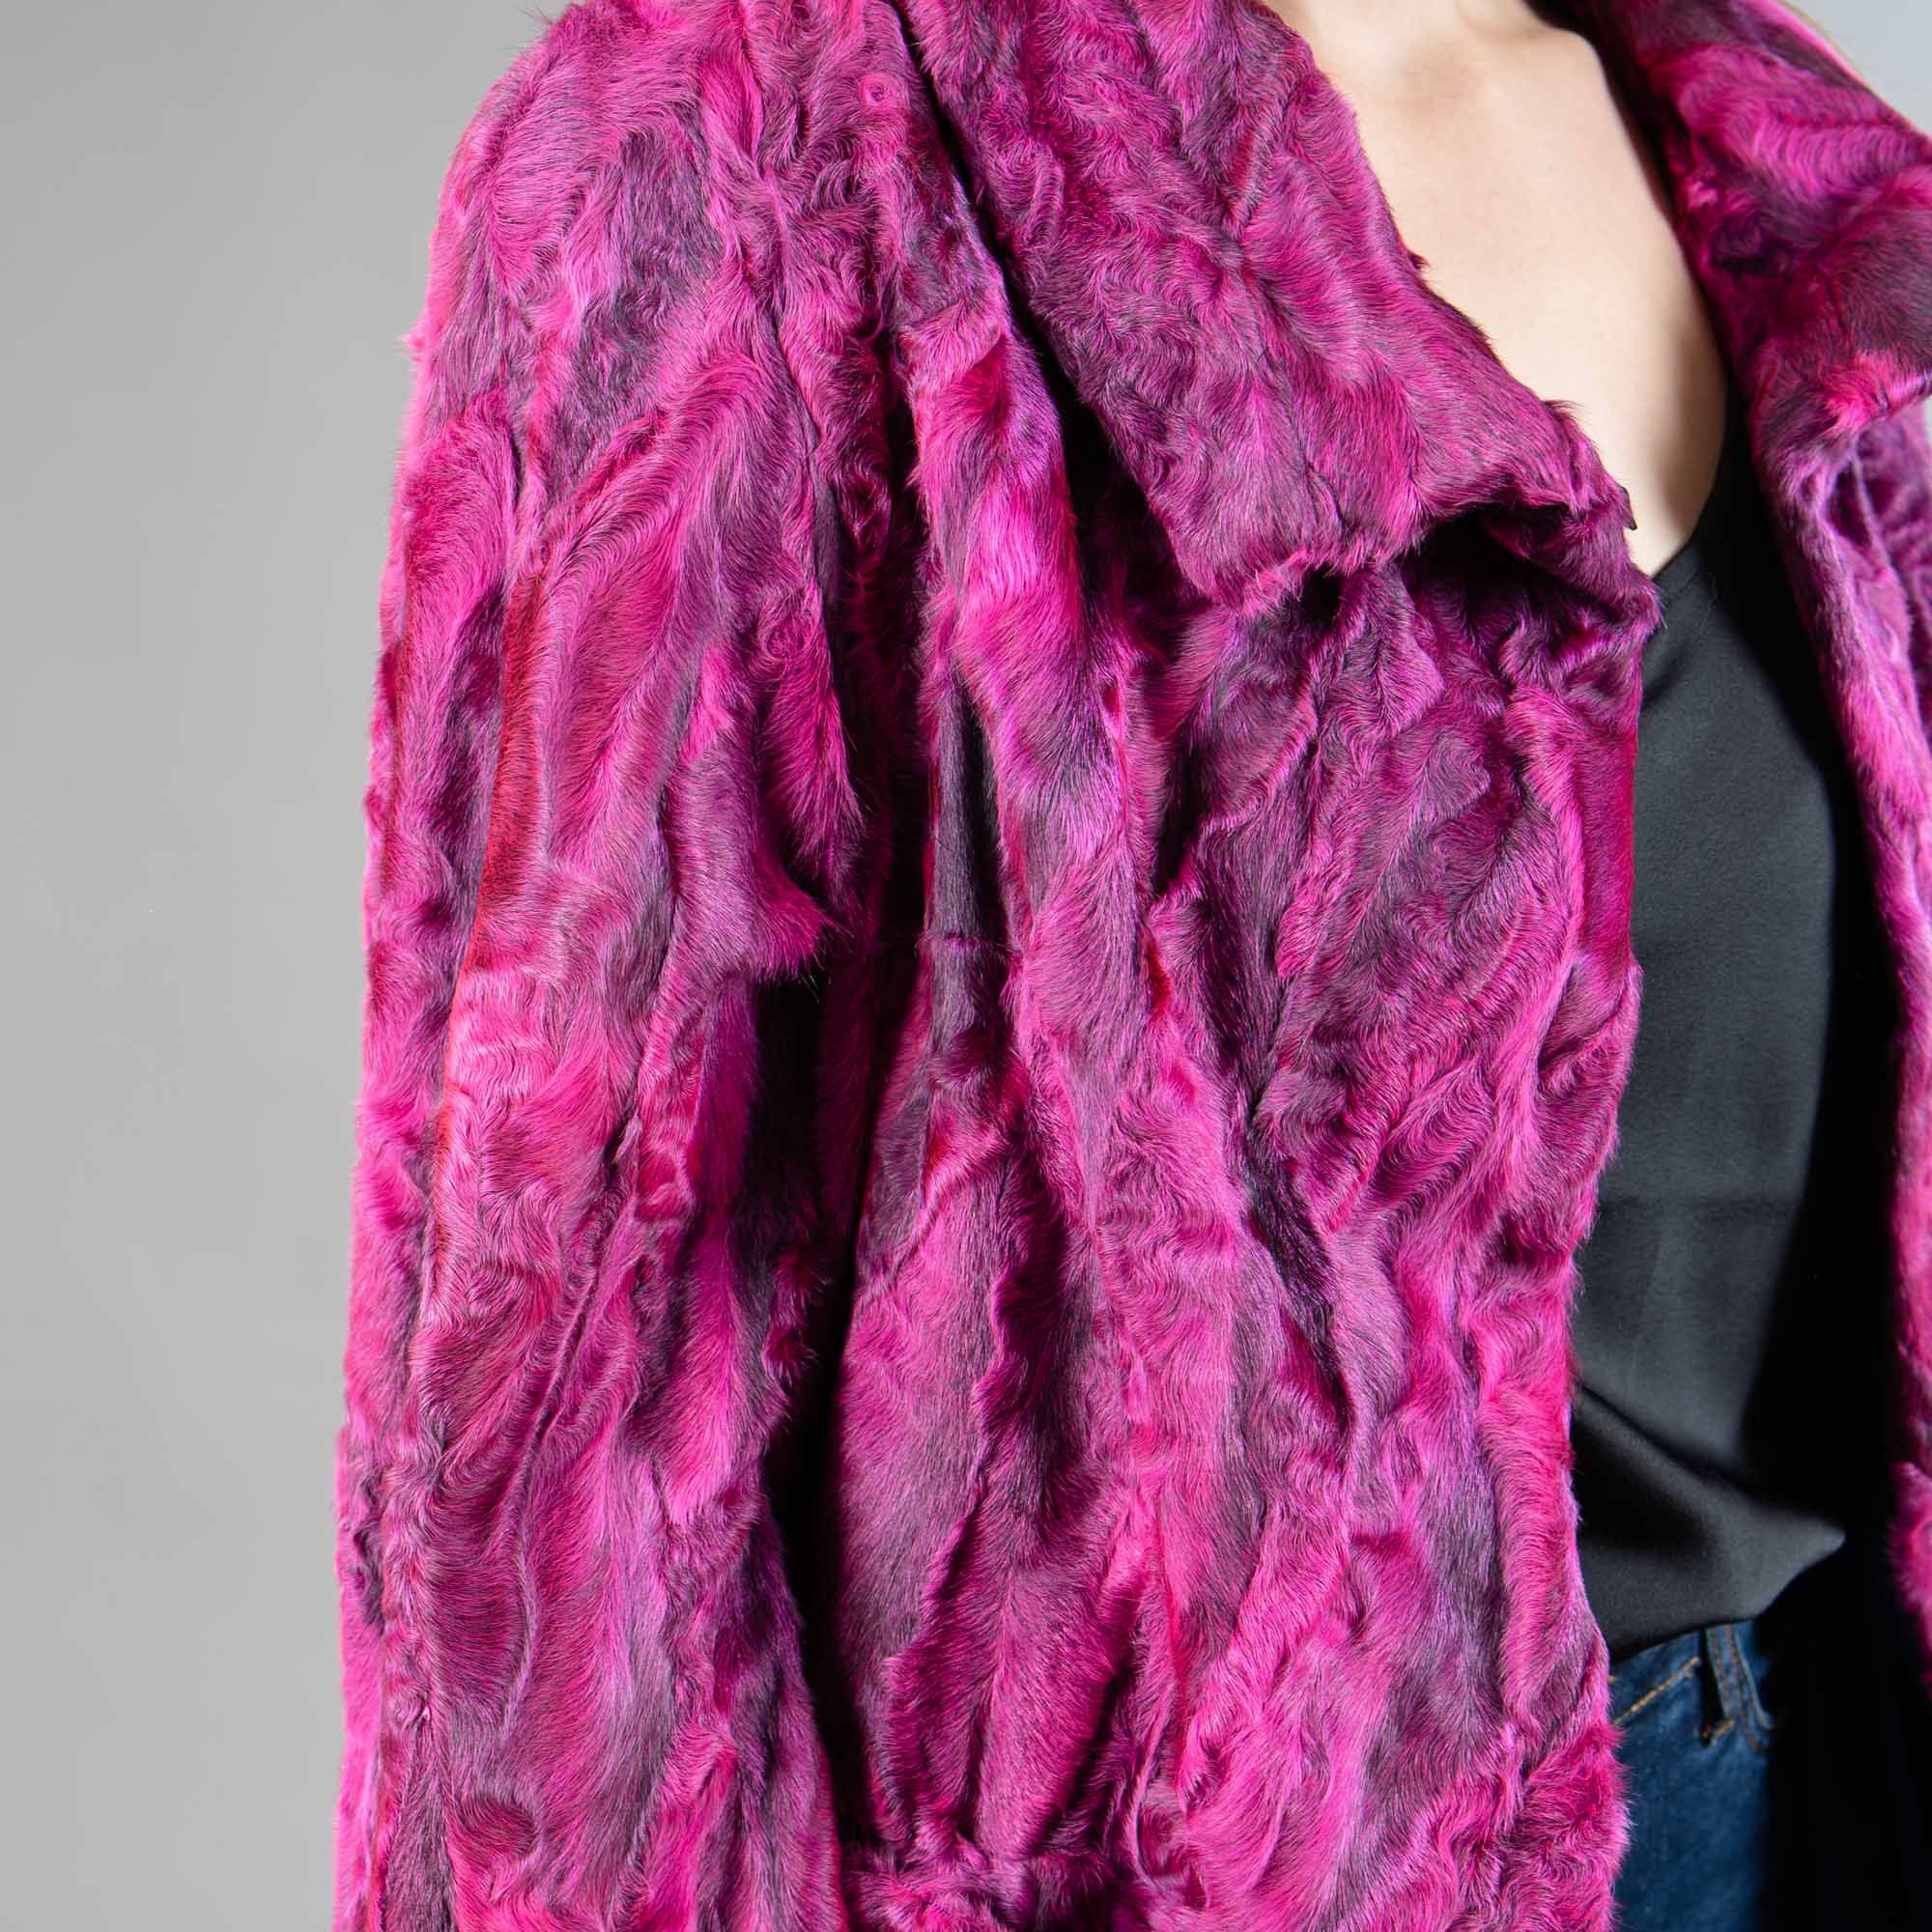 Astrakhan fur jacket in pink color